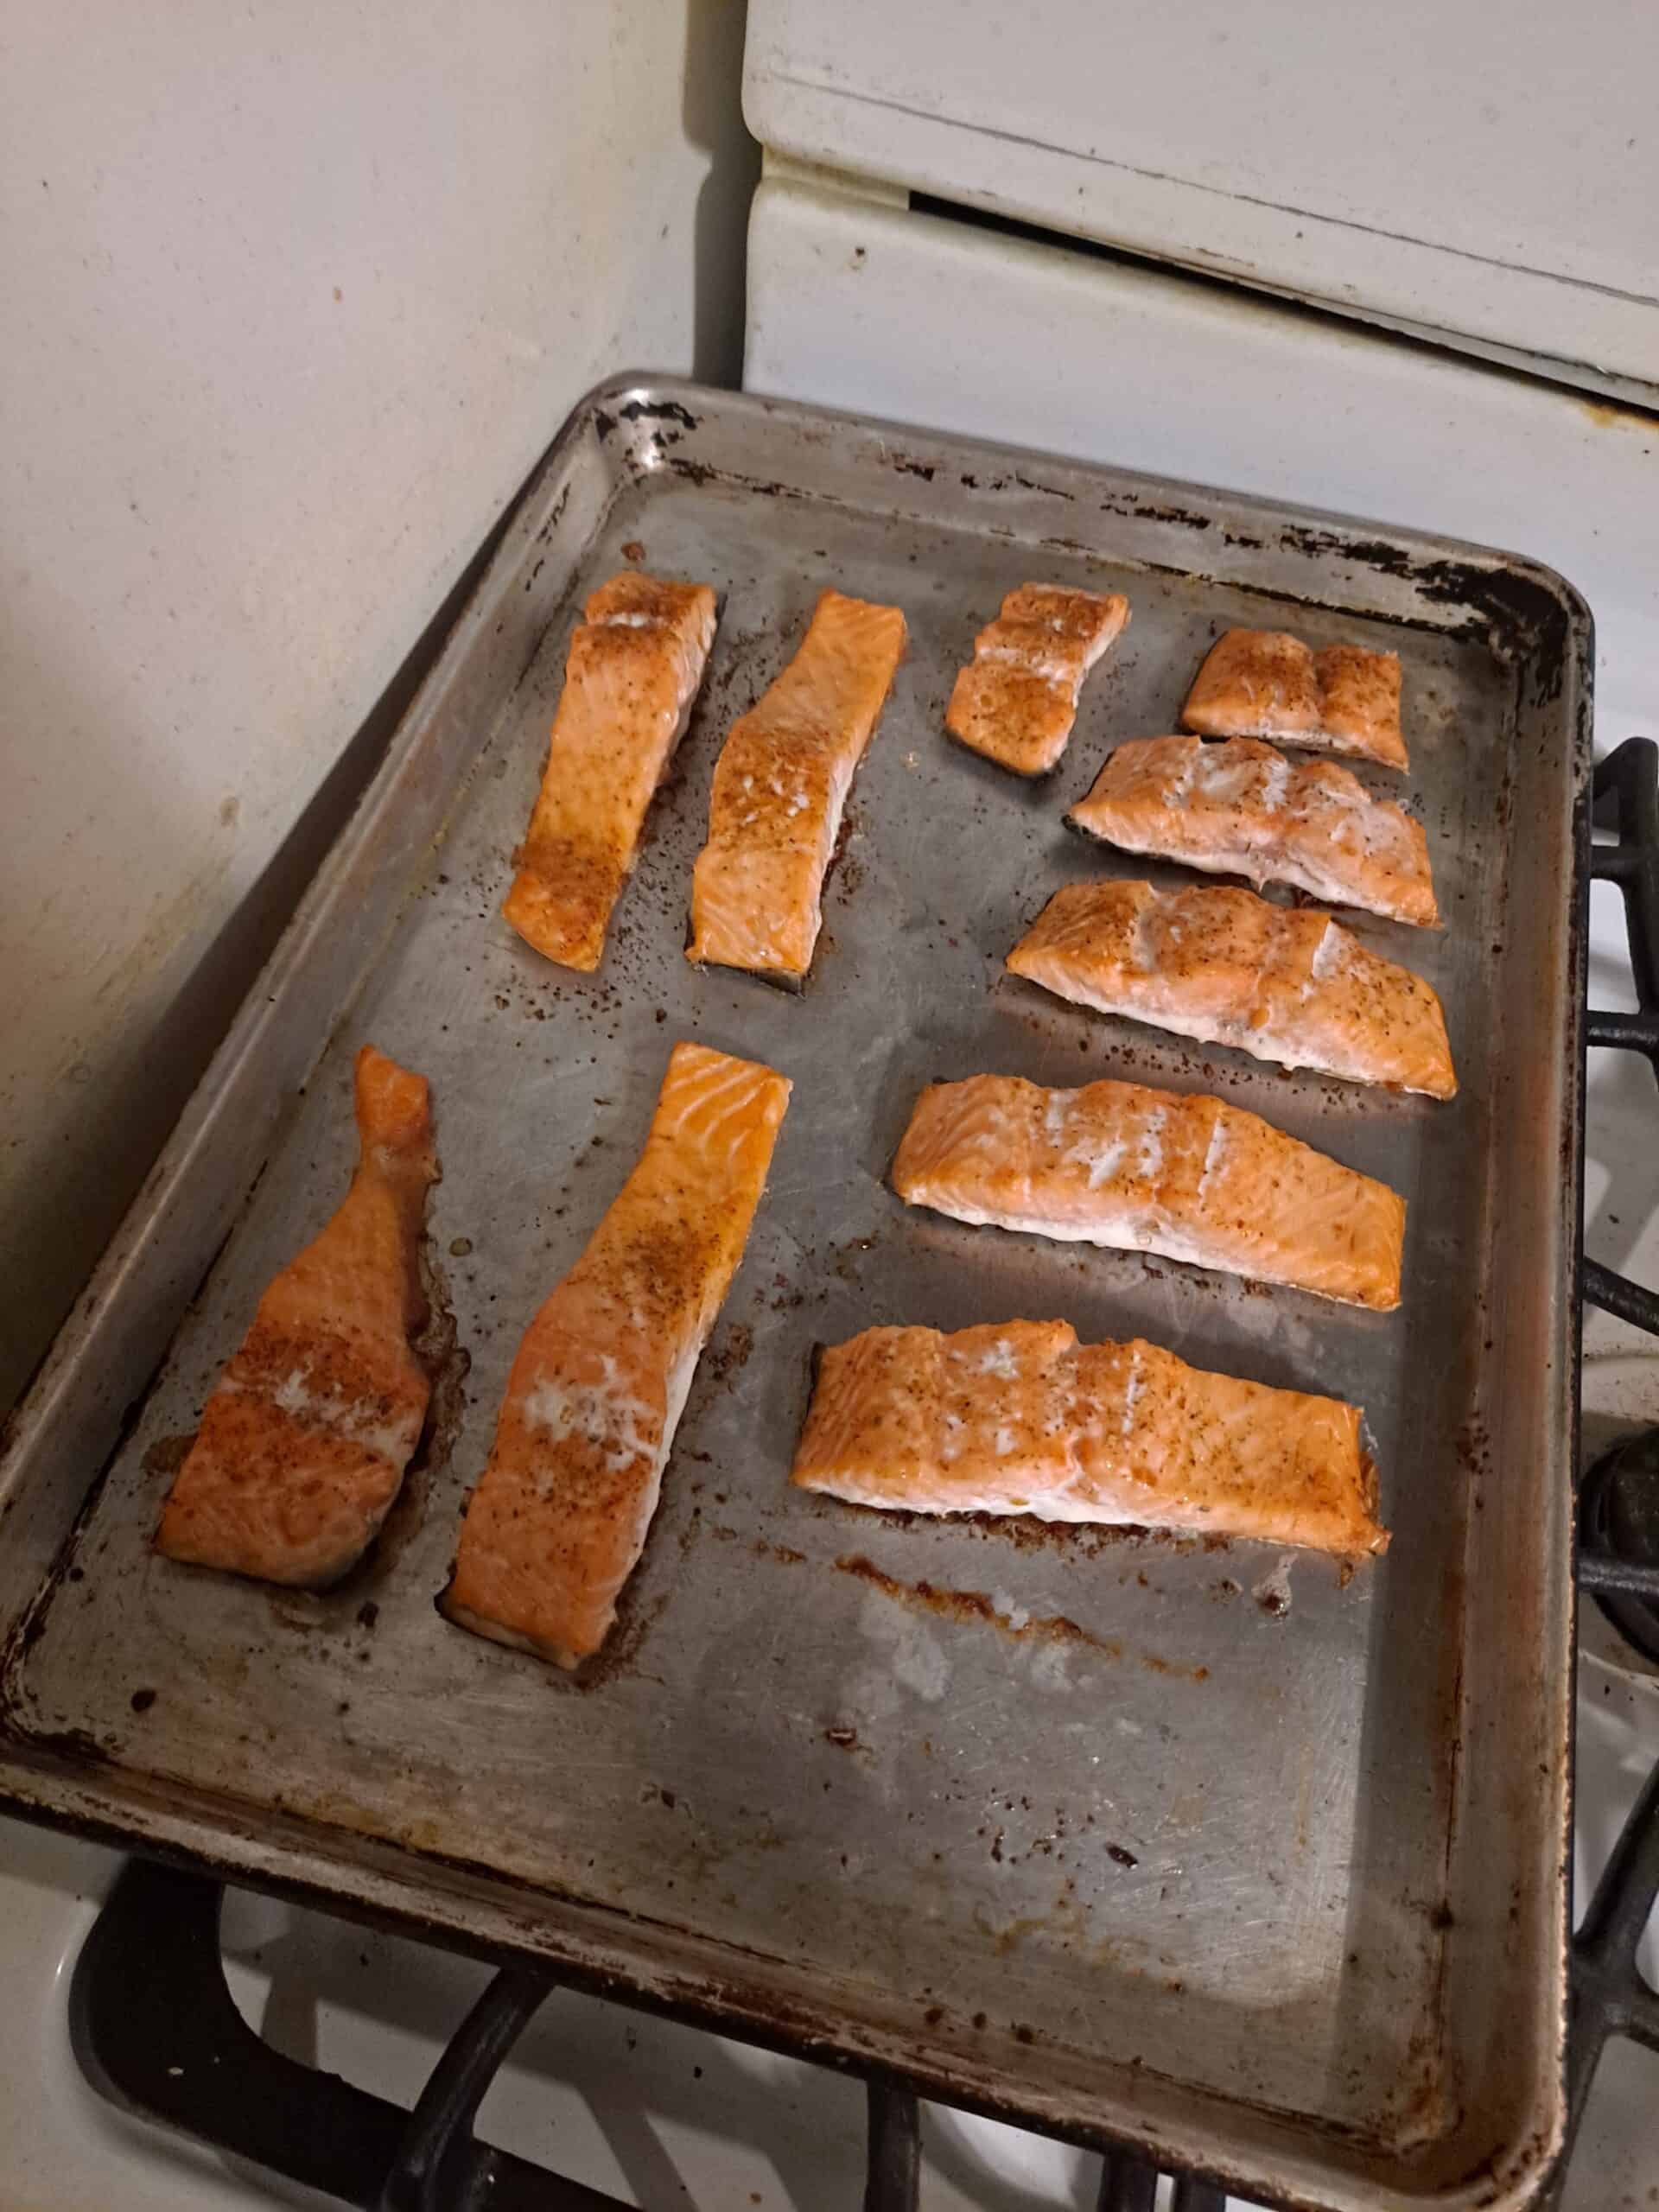 Image of baked salmon on metal sheet pan